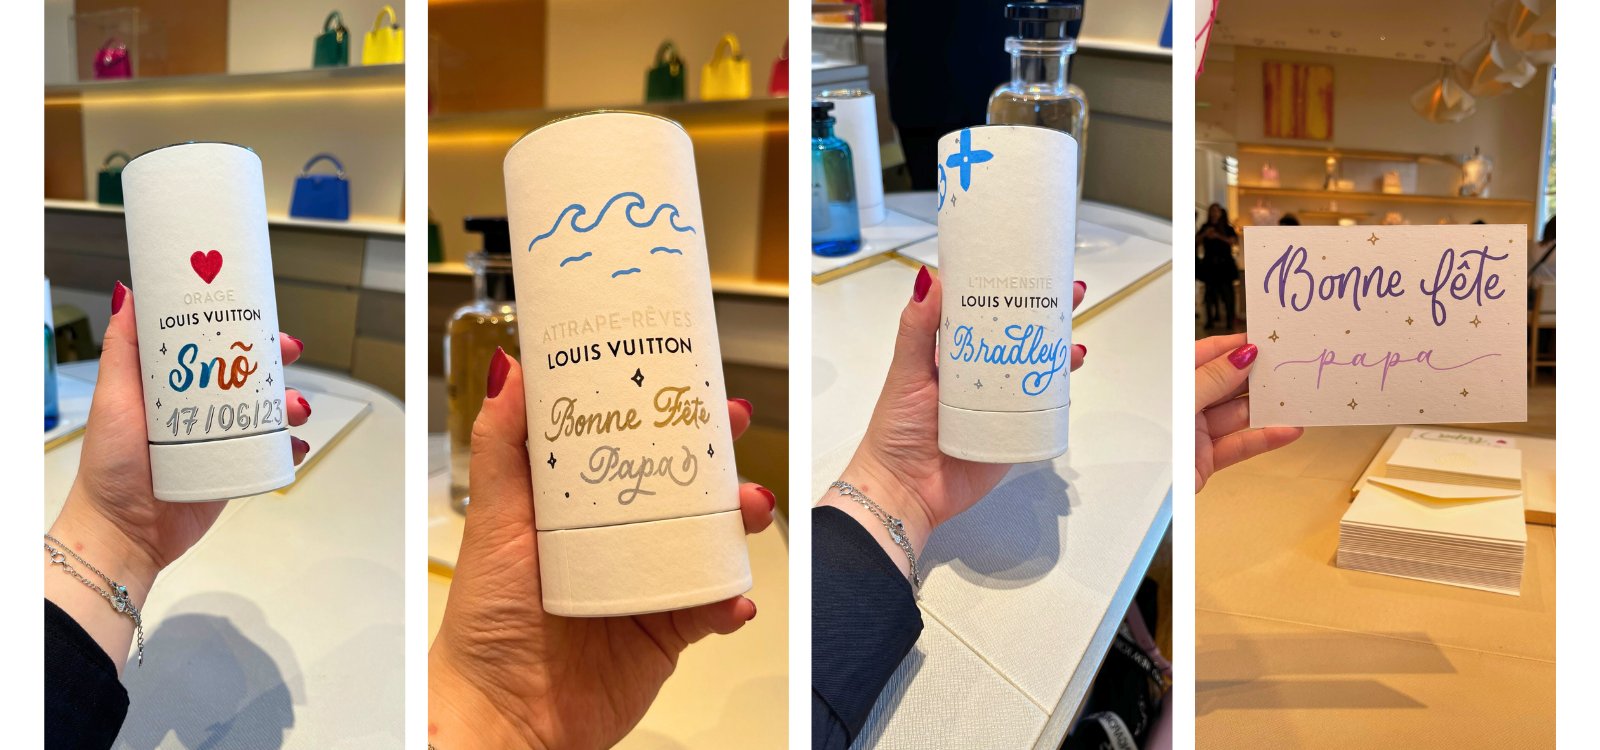 Personnalisation des boîtes de parfum pour les clients de la marque Louis Vuitton